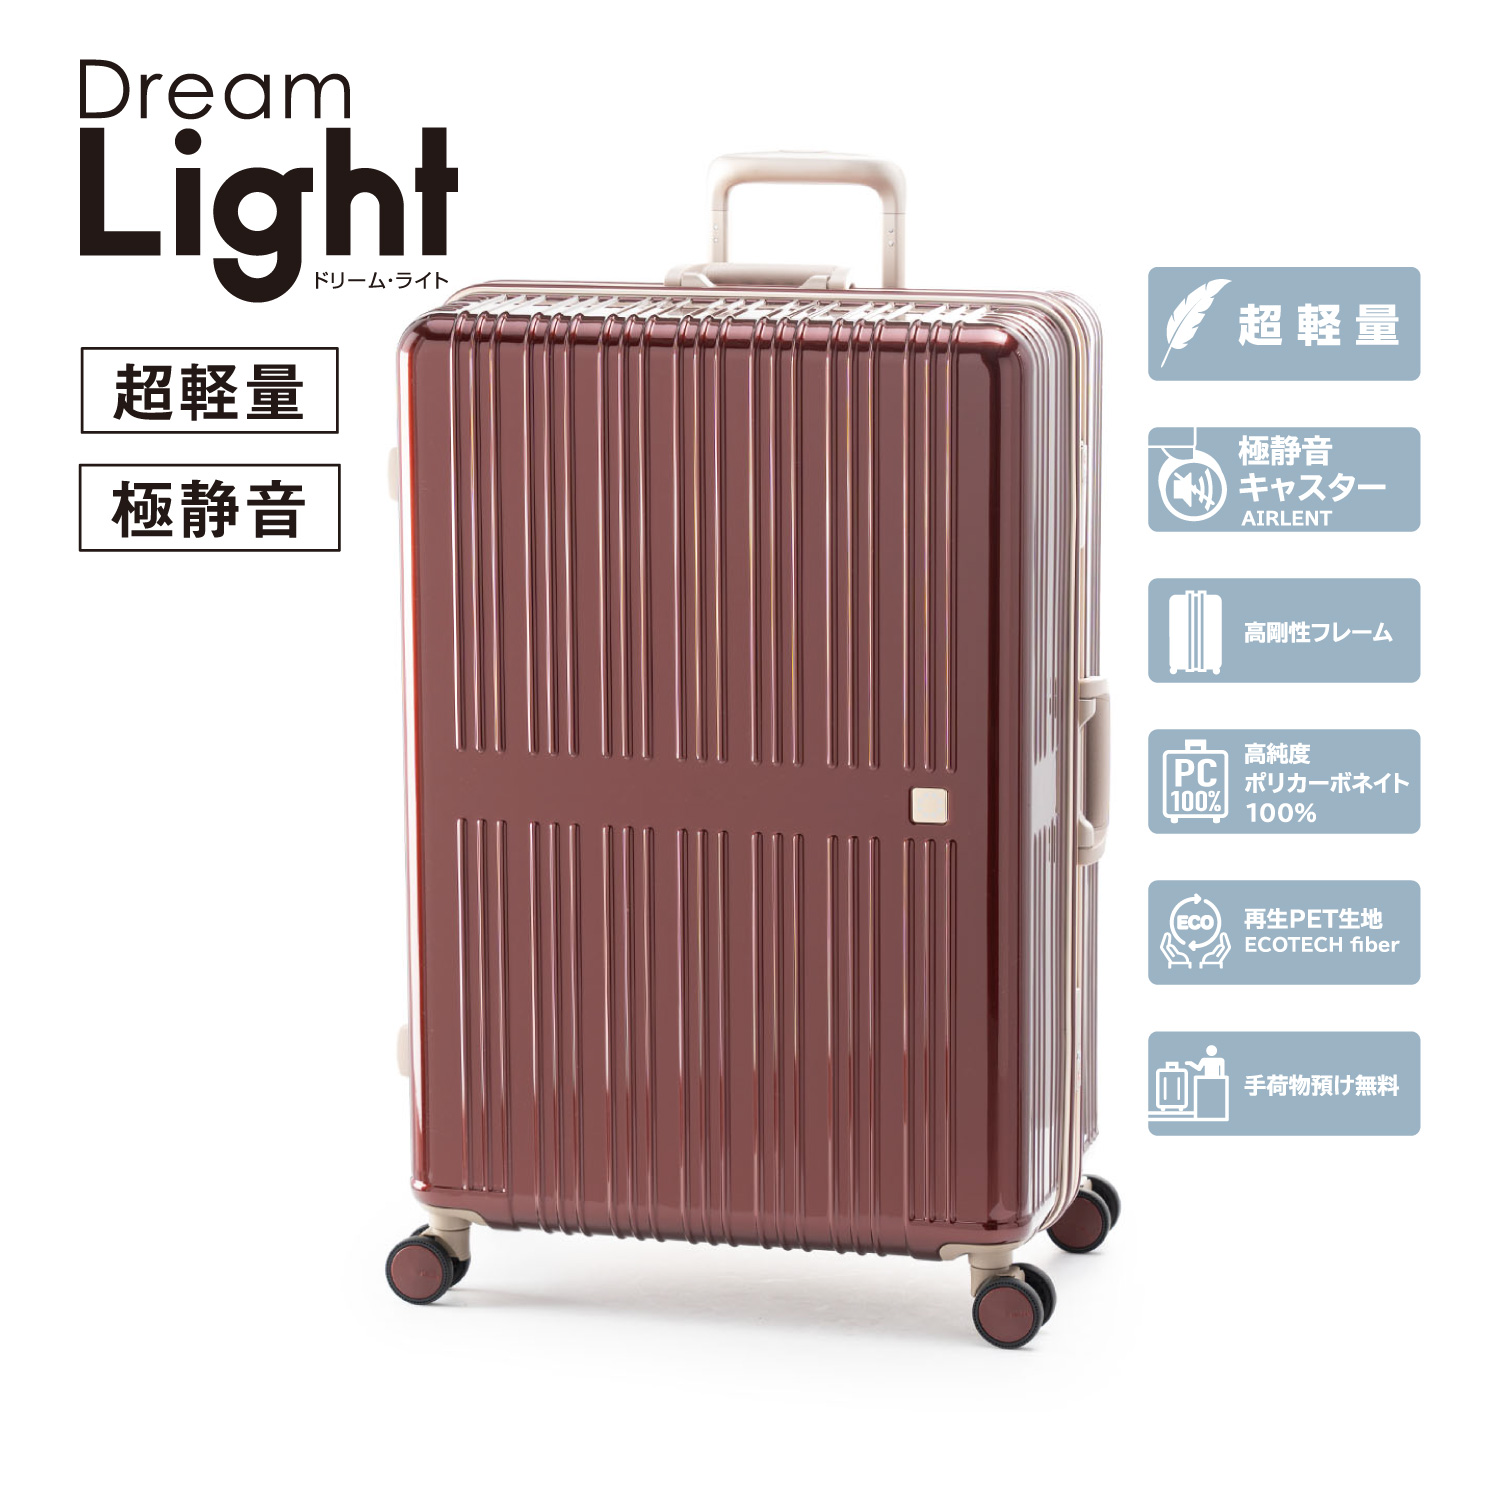 軽量 | アジア・ラゲージ 公式サイト | Asia Luggage Inc.